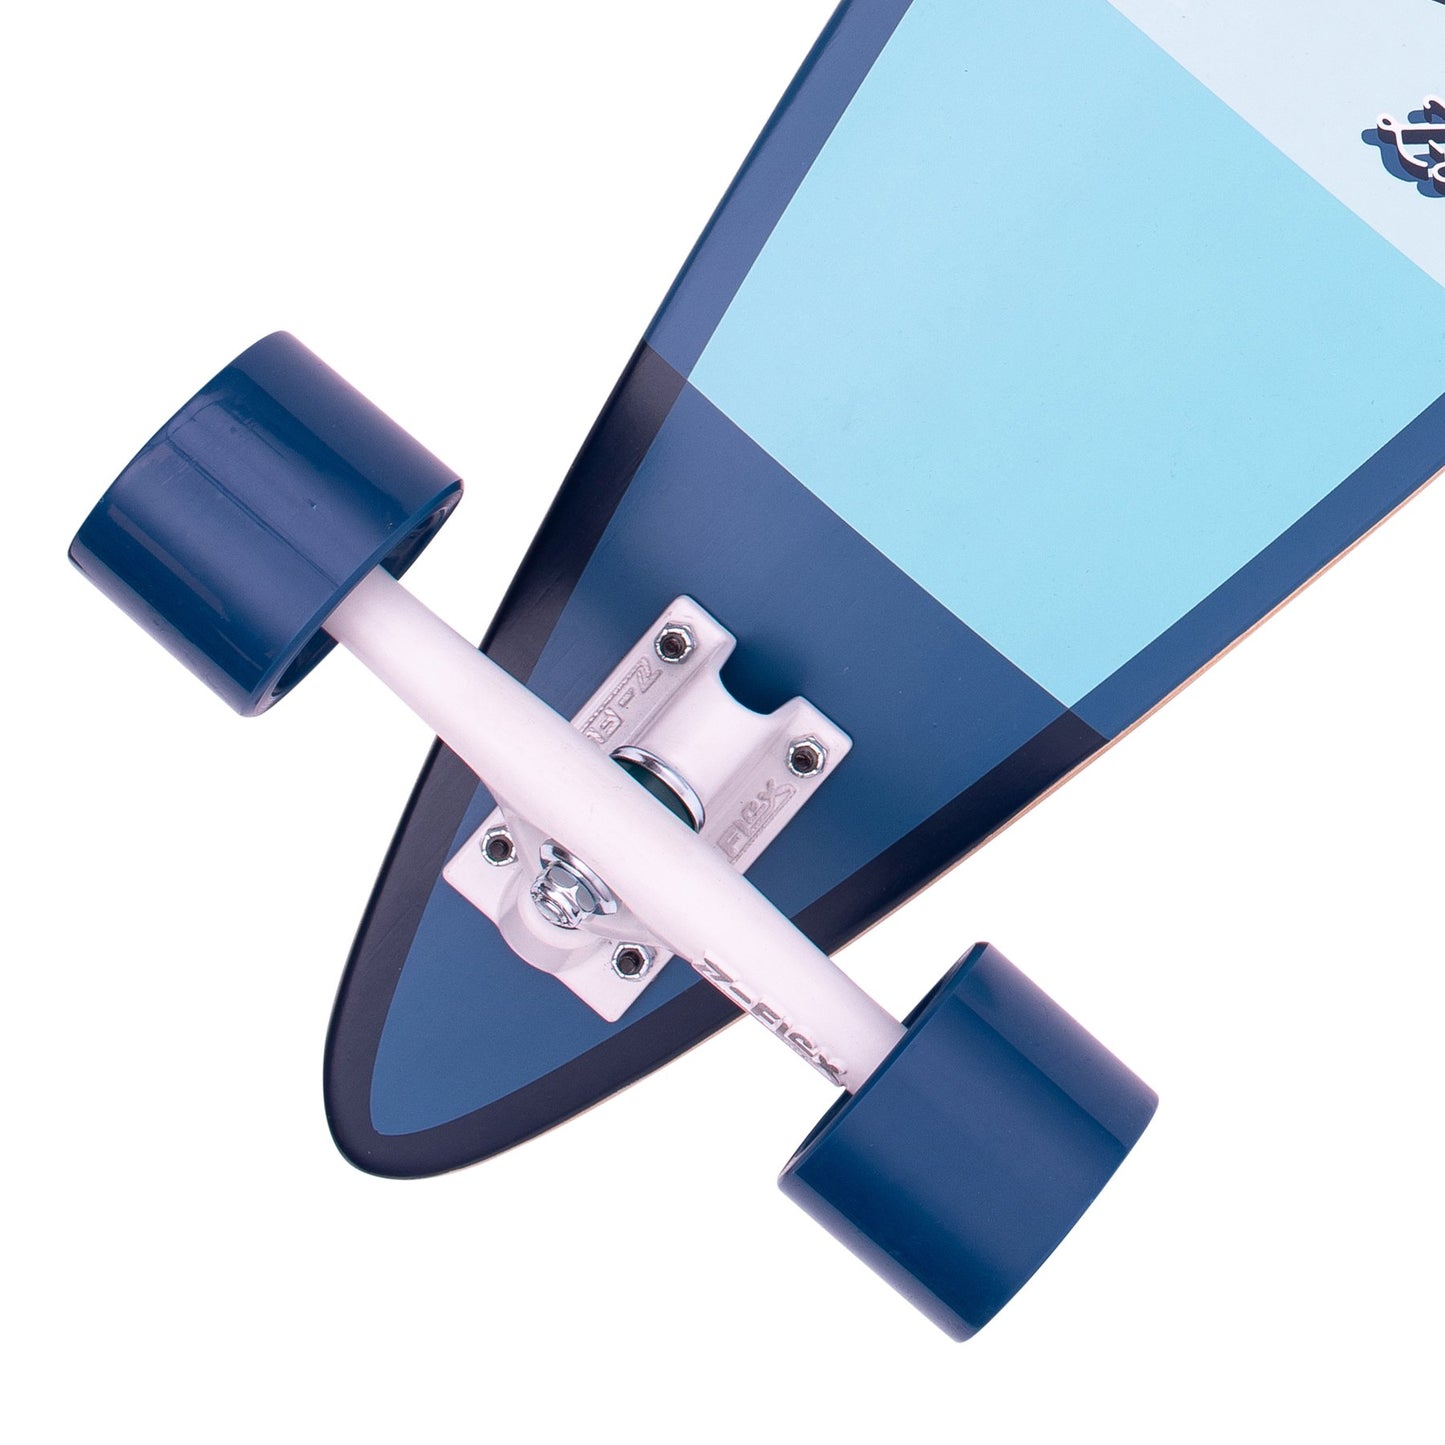 Z-FLEX スケートボード 38インチ Bambooコンプリートピンテール ブルー-Z-FLEX SKATEBOARDS JAPAN OFFICIAL【公式通販】